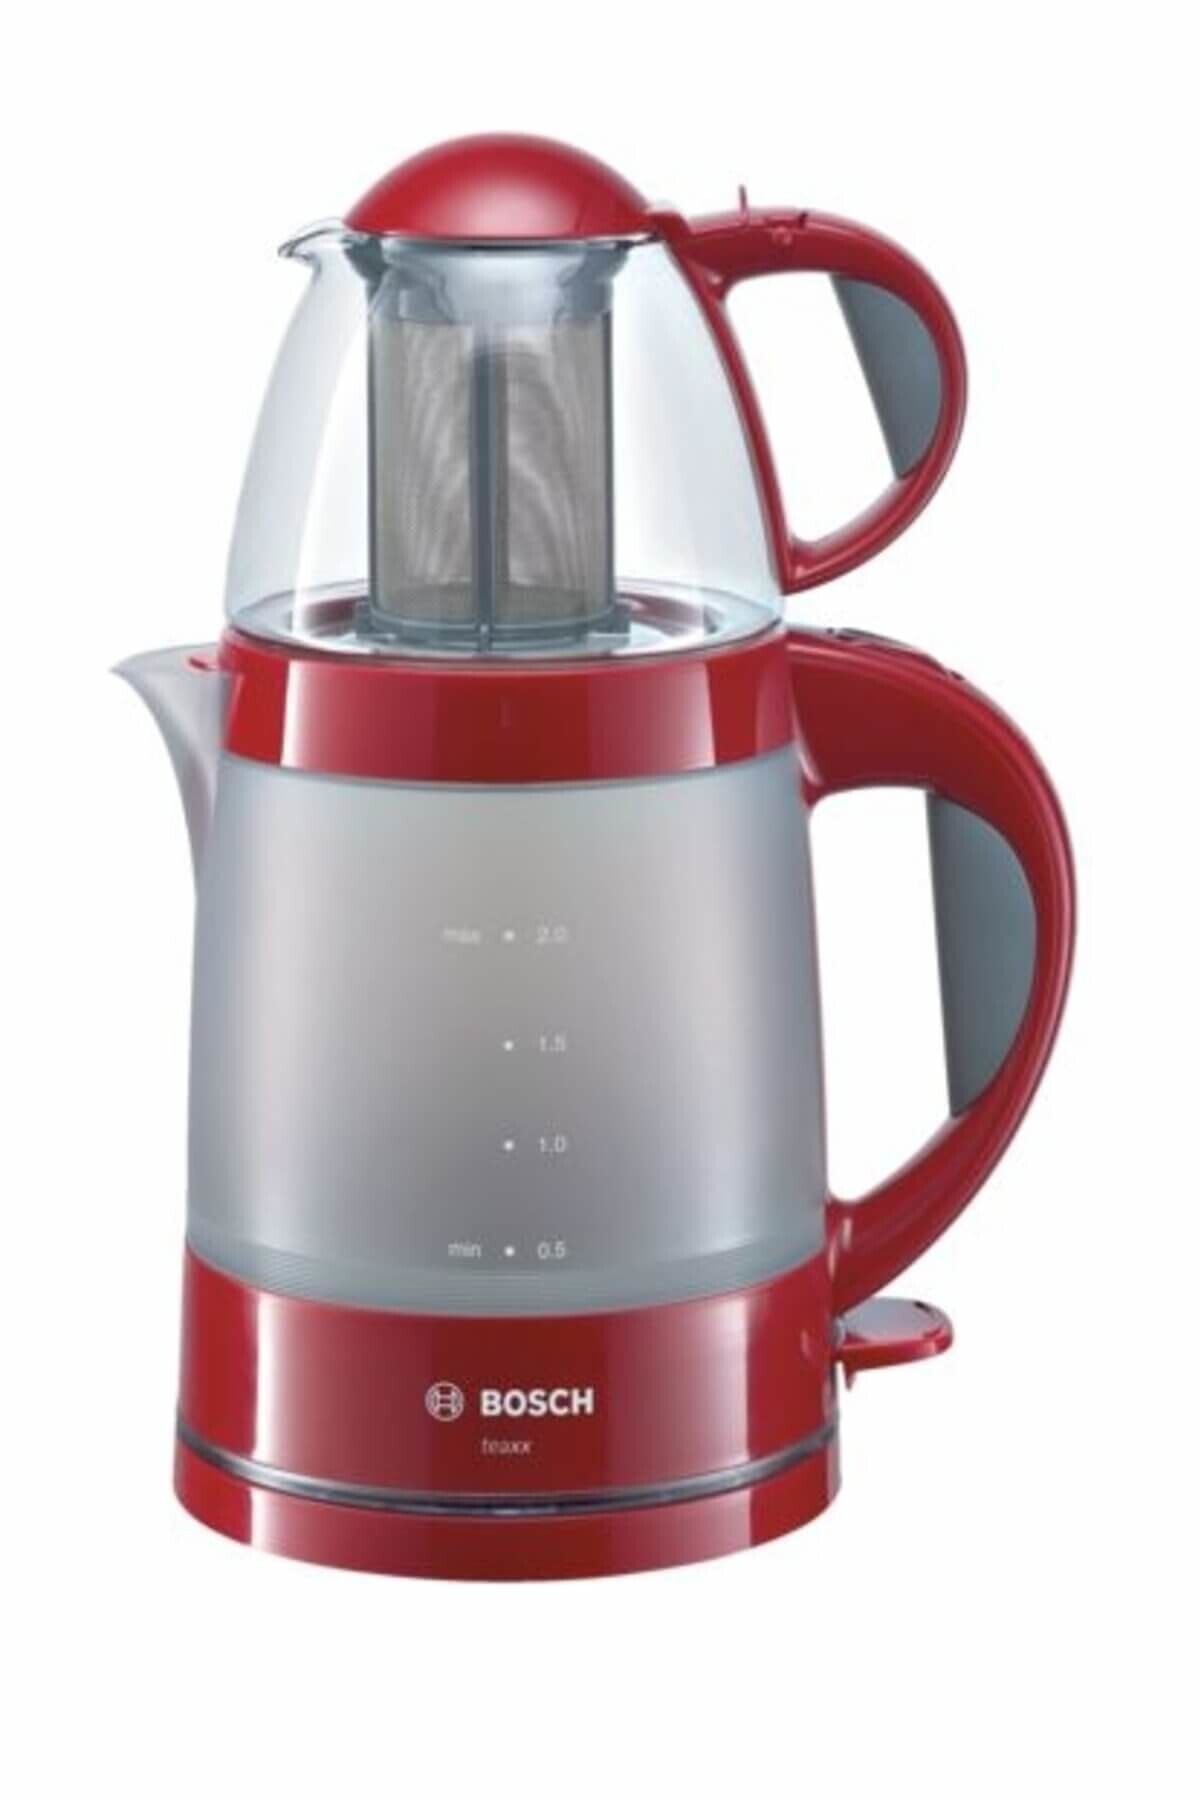 Bosch Tta2010 Çay Makinası